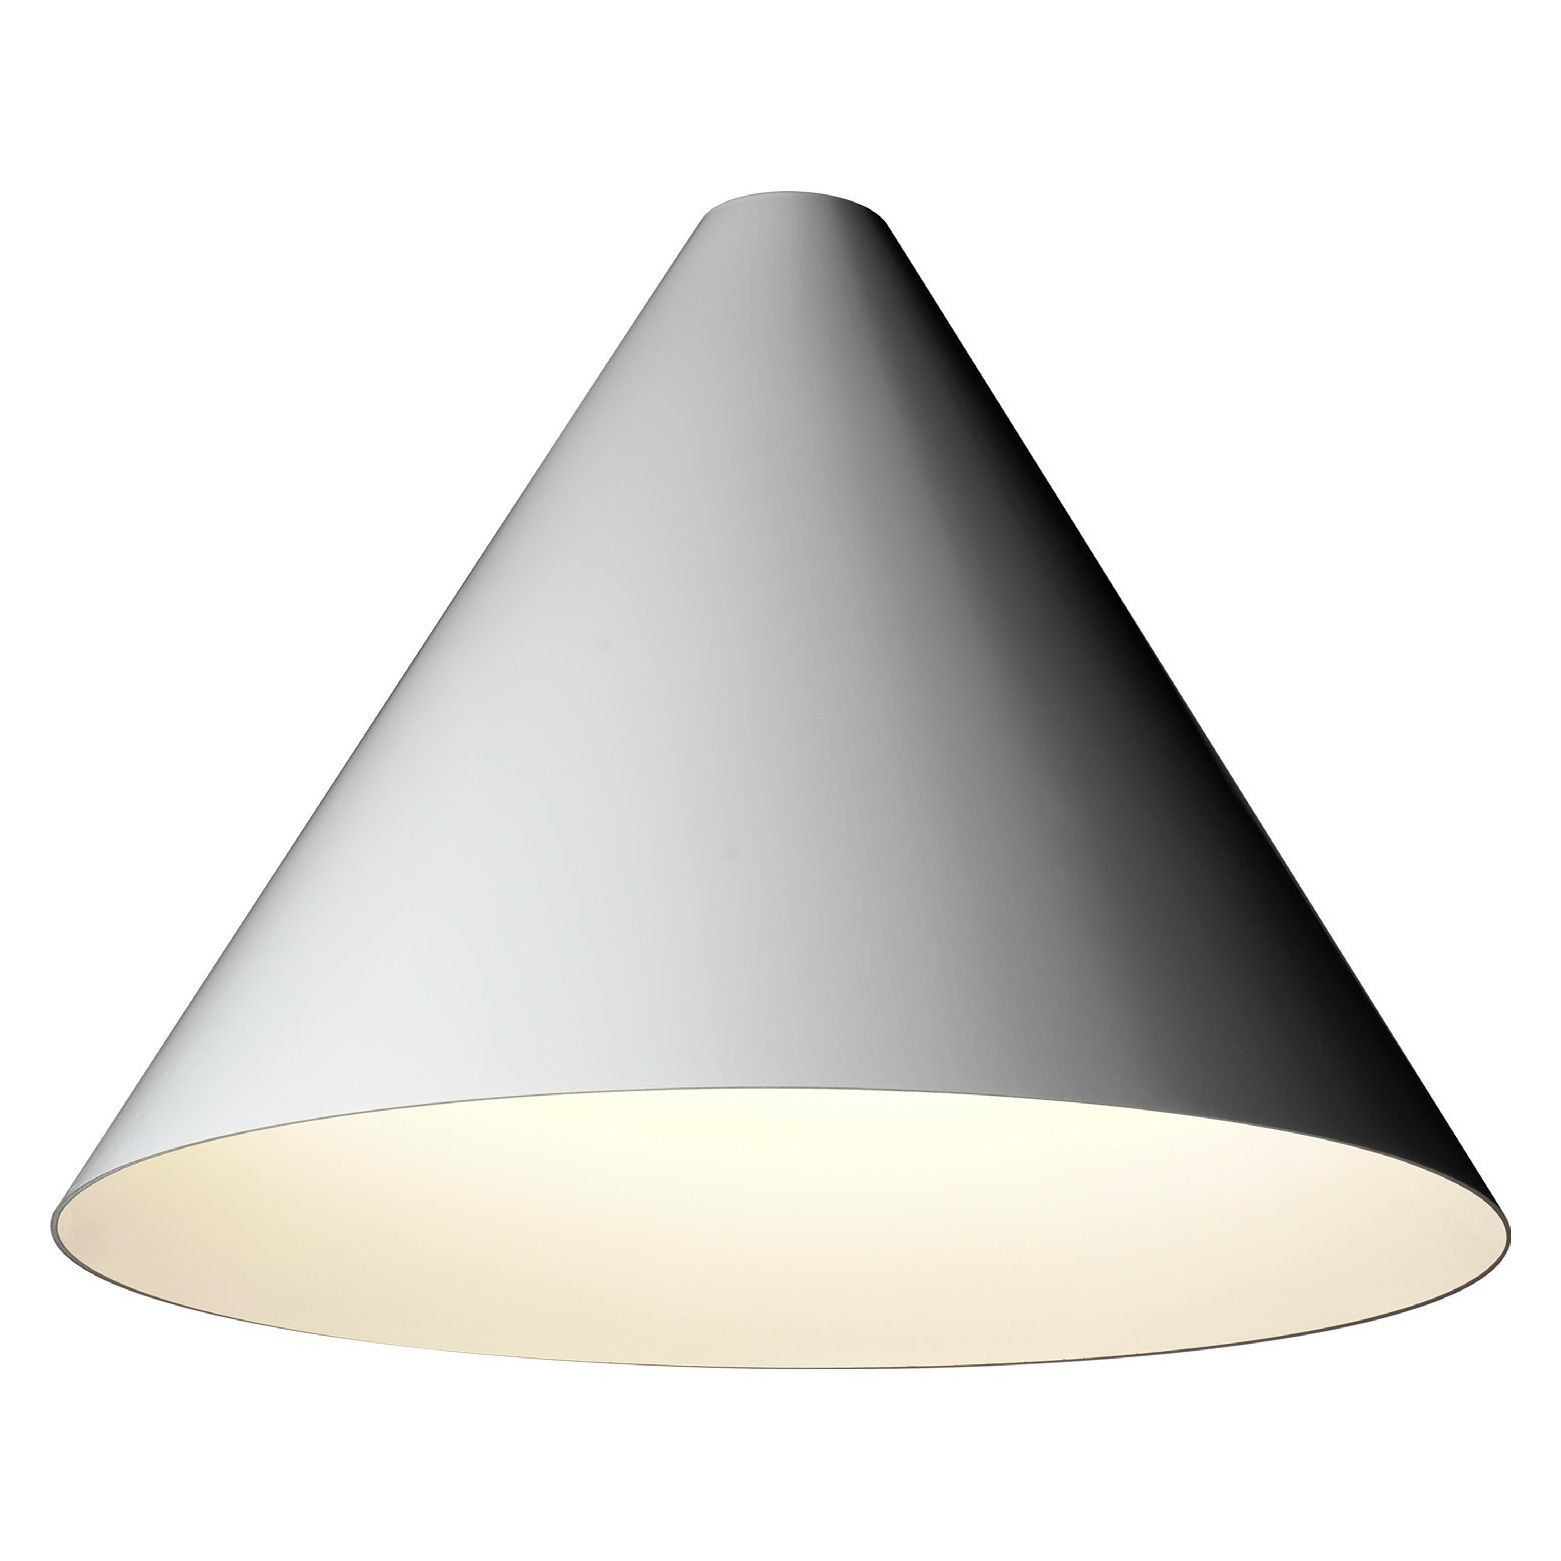 tossB designová stropní svítidla Cone Ceiling M (průměr 80 cm) - DESIGNPROPAGANDA